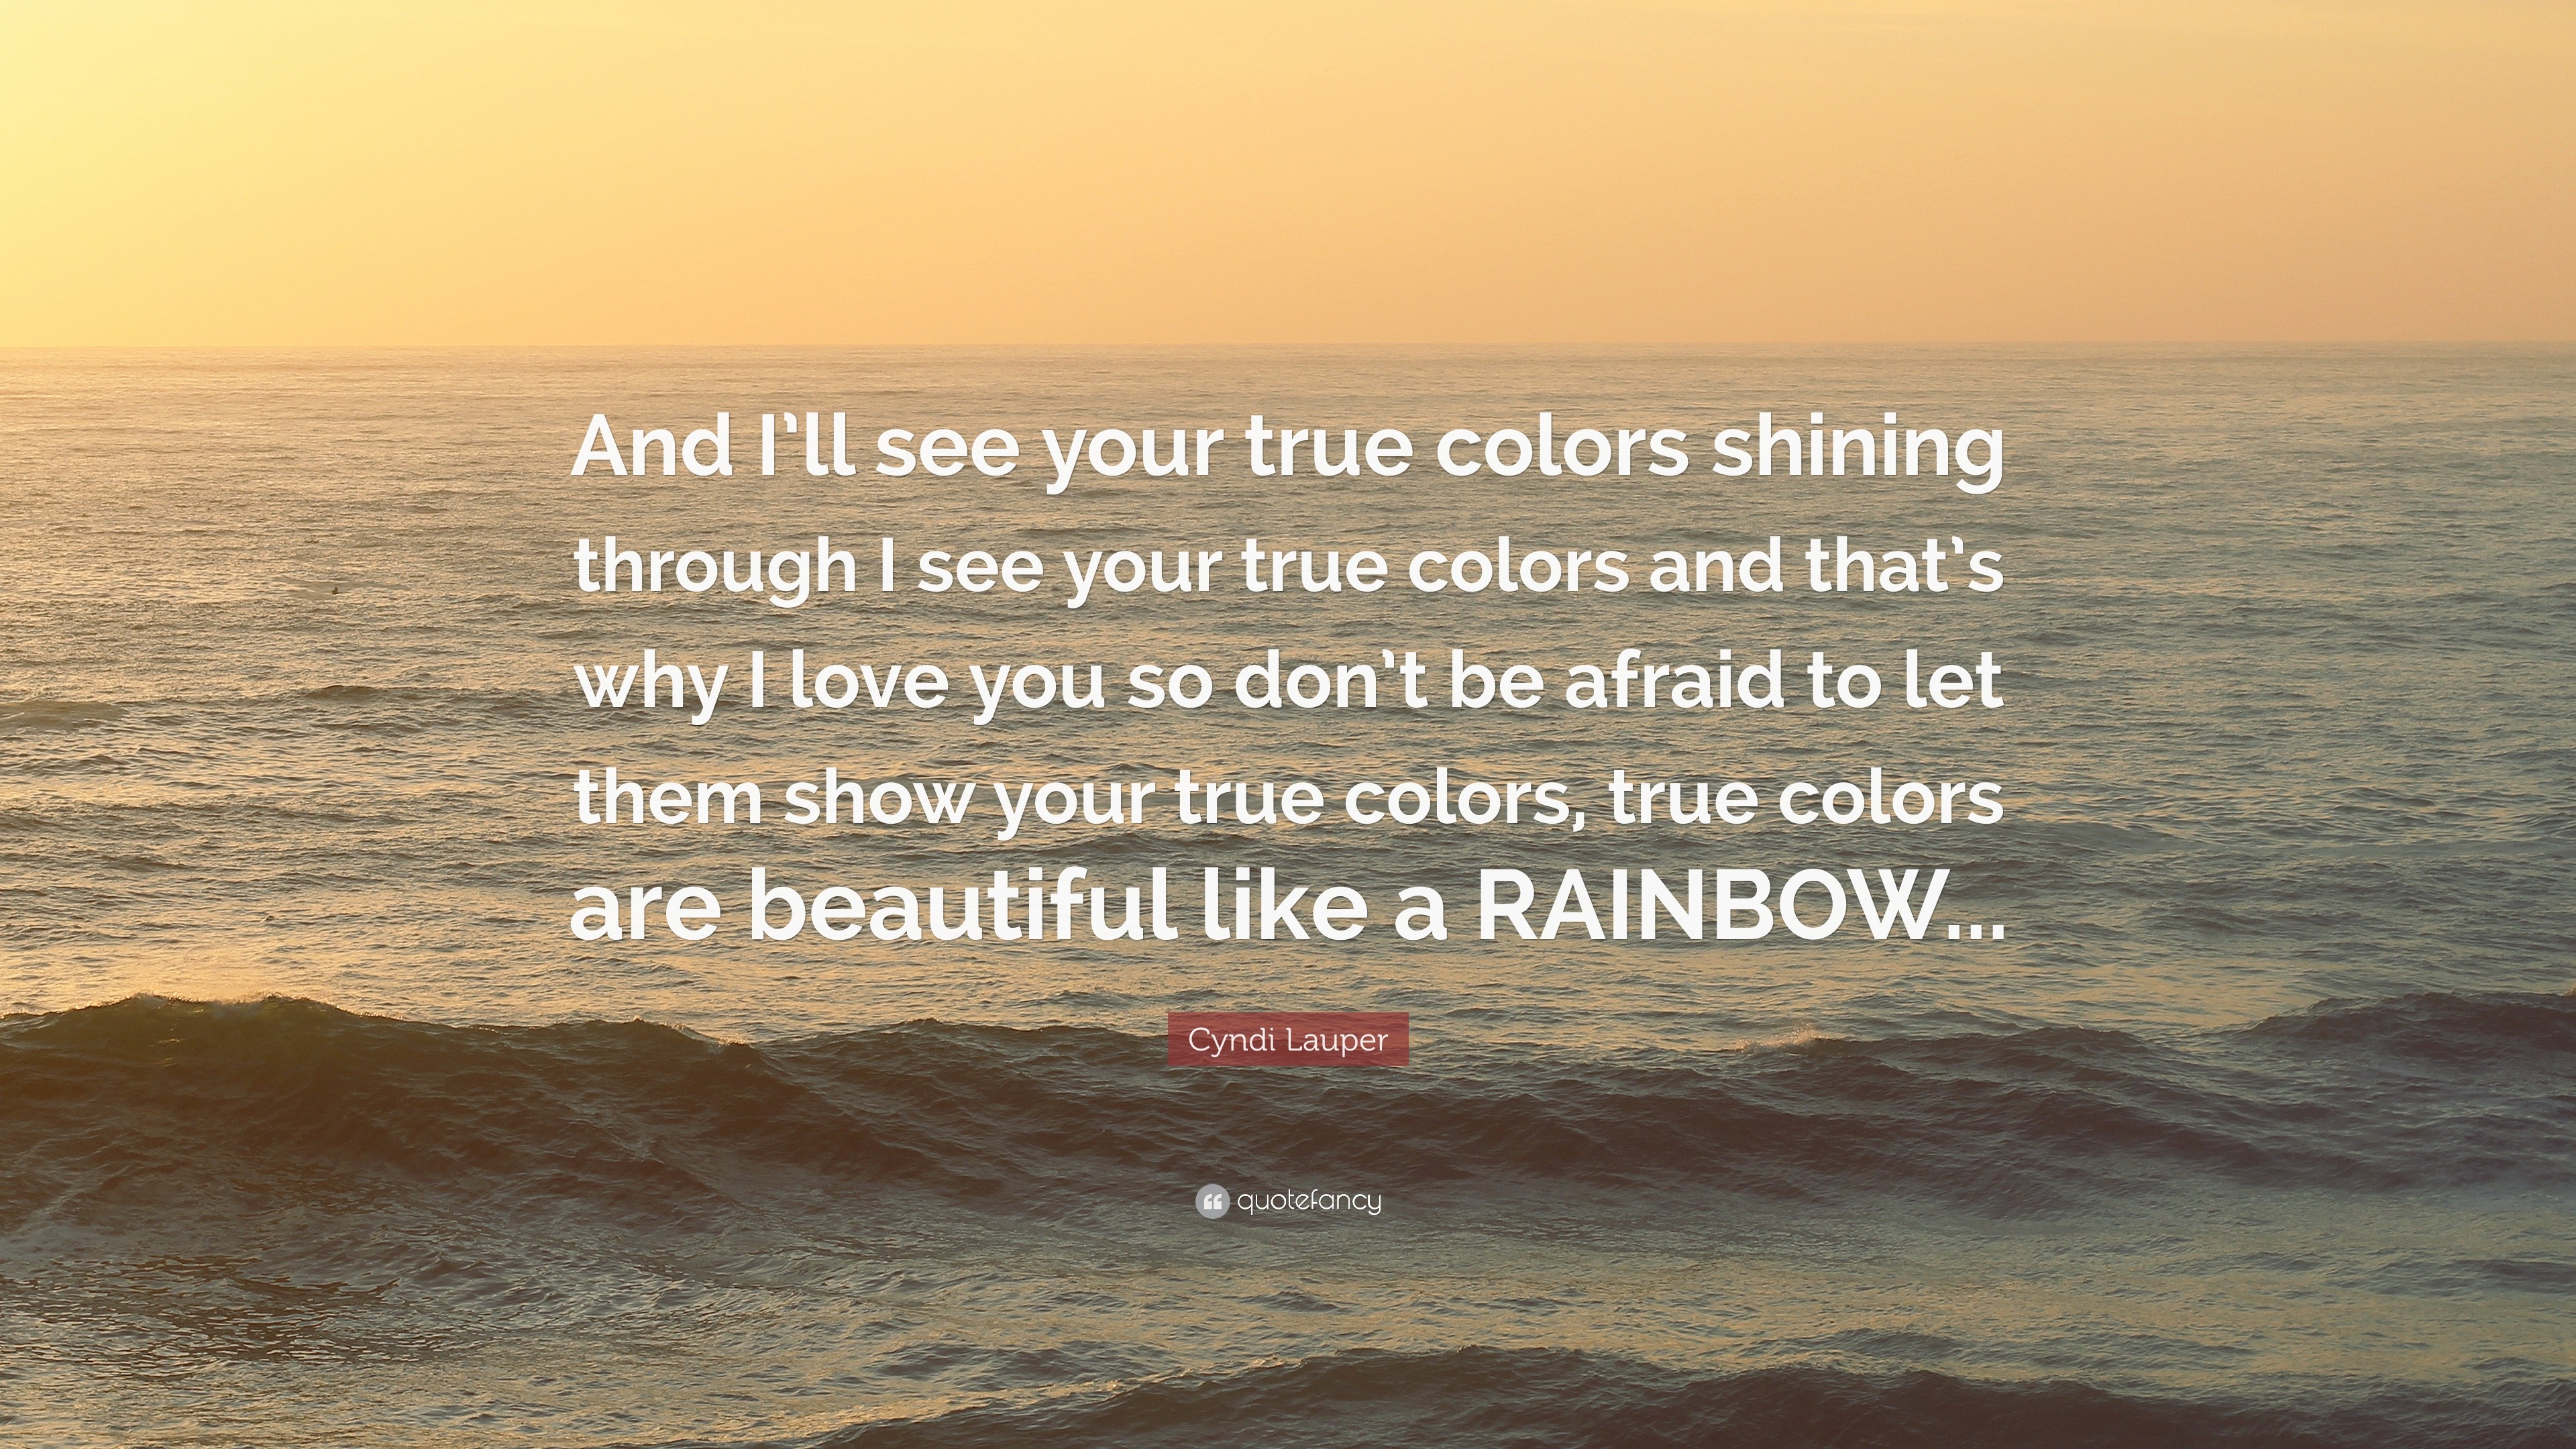 True Colours Cyndi Lauper Music Lyrics Wall Art Sticker inspirational quote